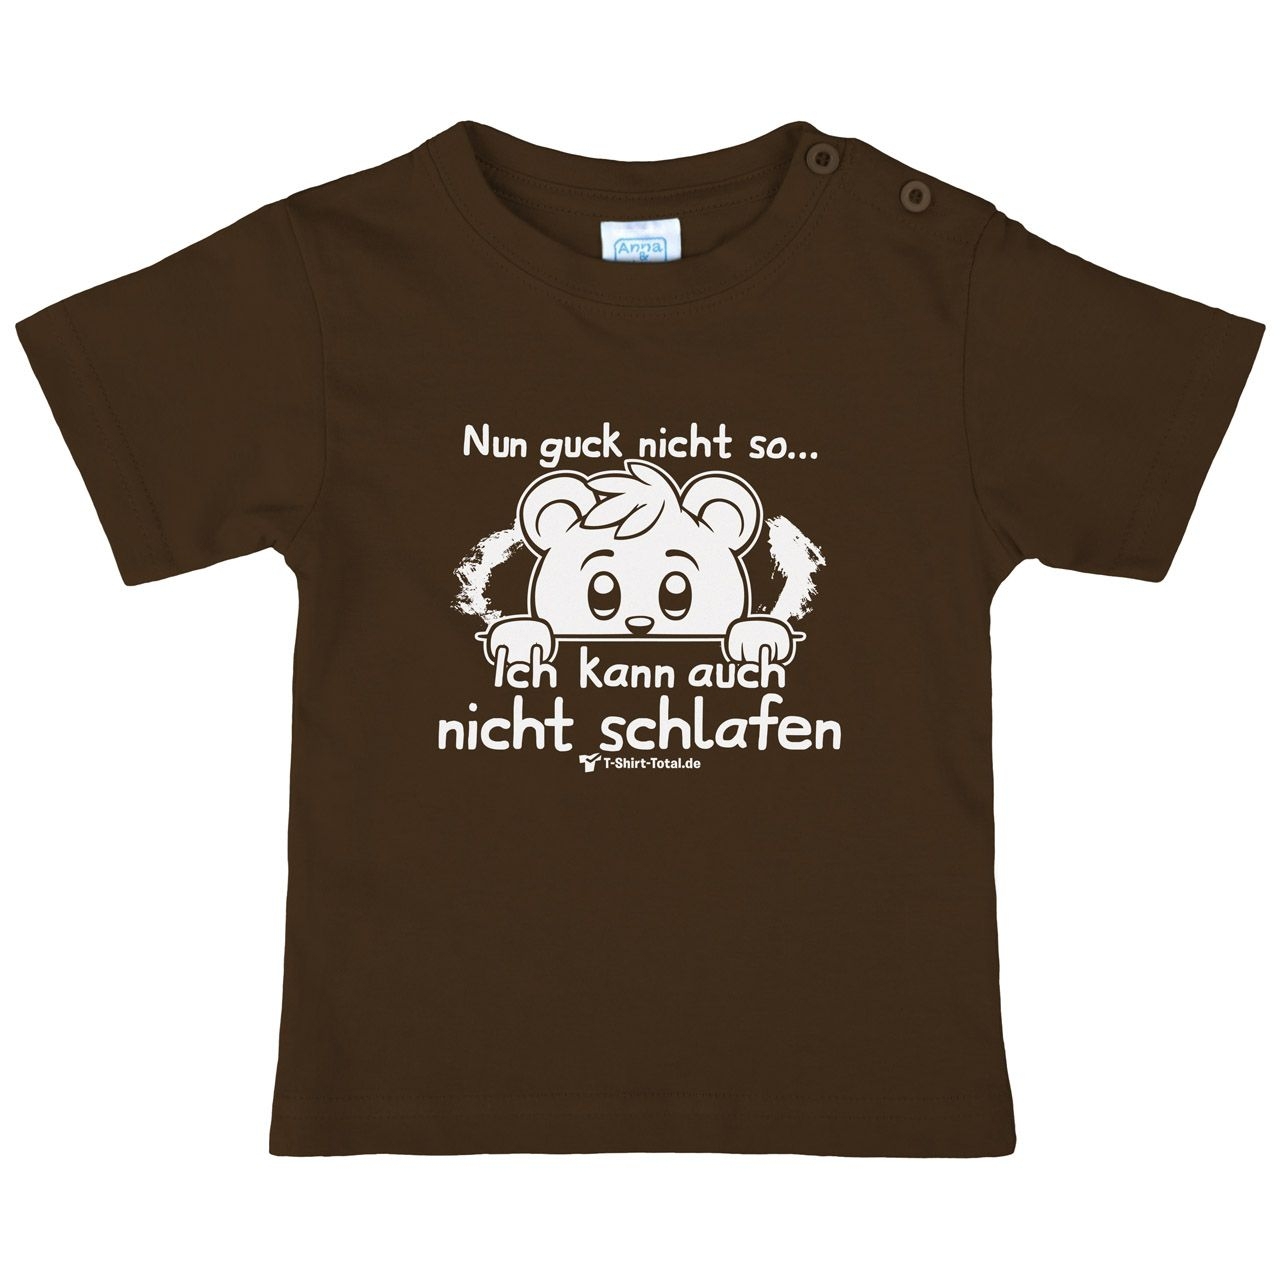 Guck nicht so Kinder T-Shirt braun 68 / 74